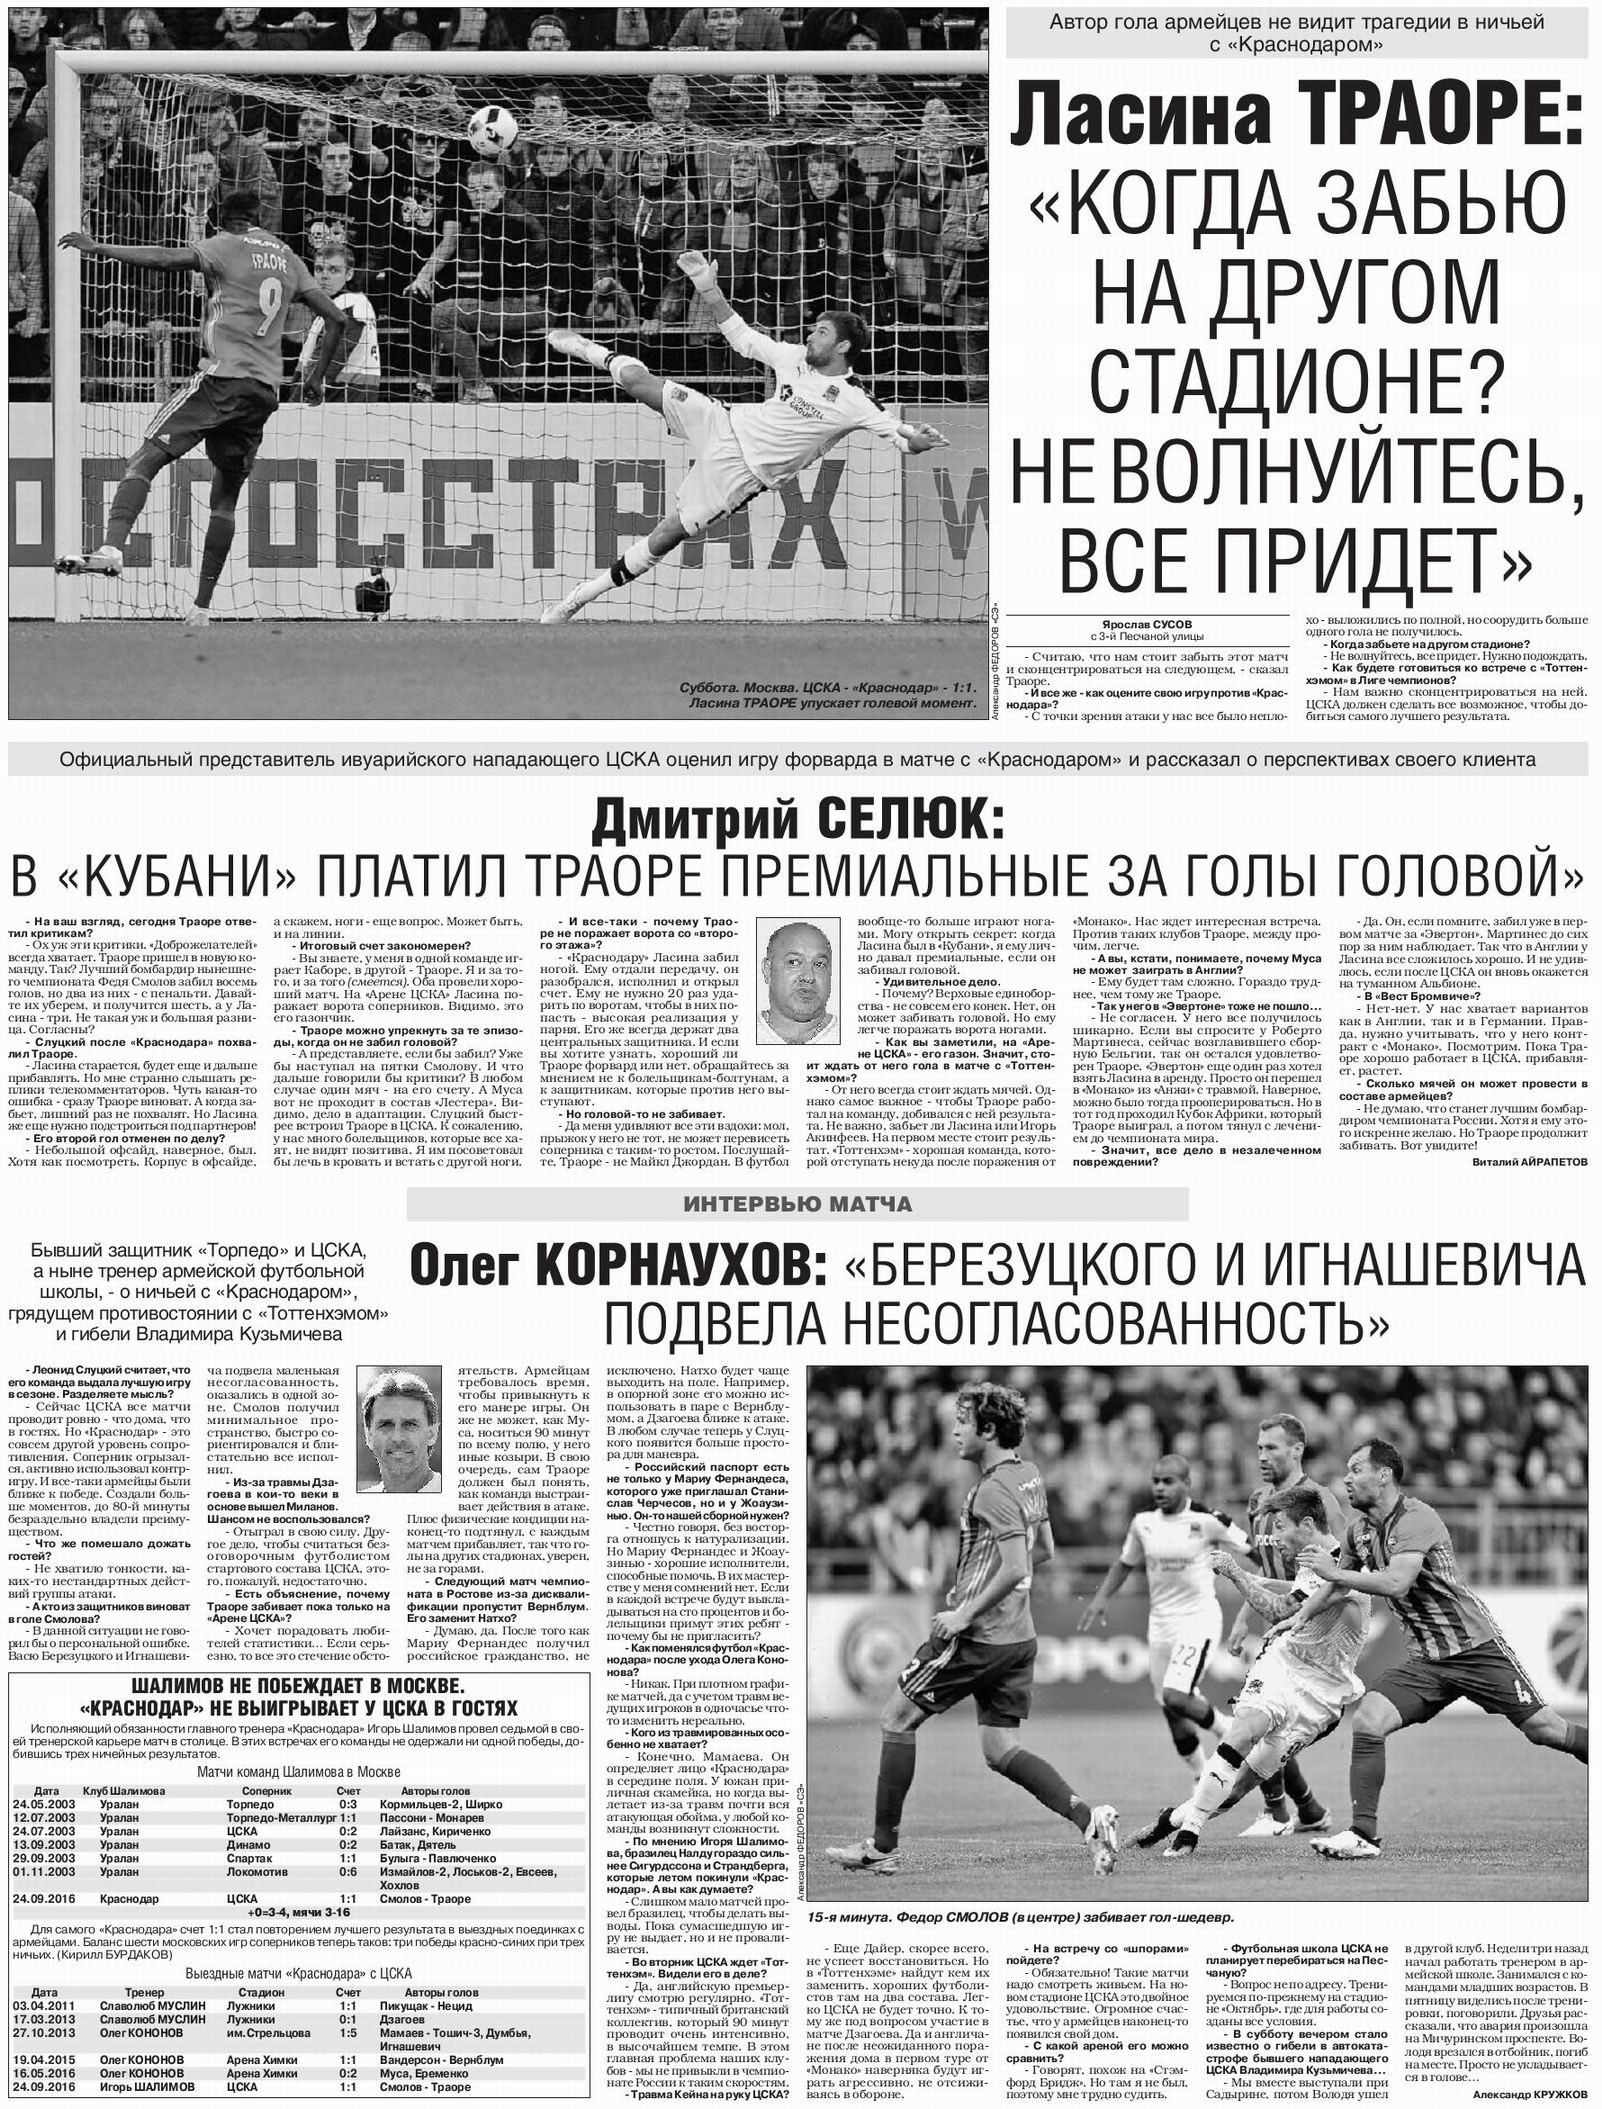 2016-09-24.CSKA-Krasnodar.1